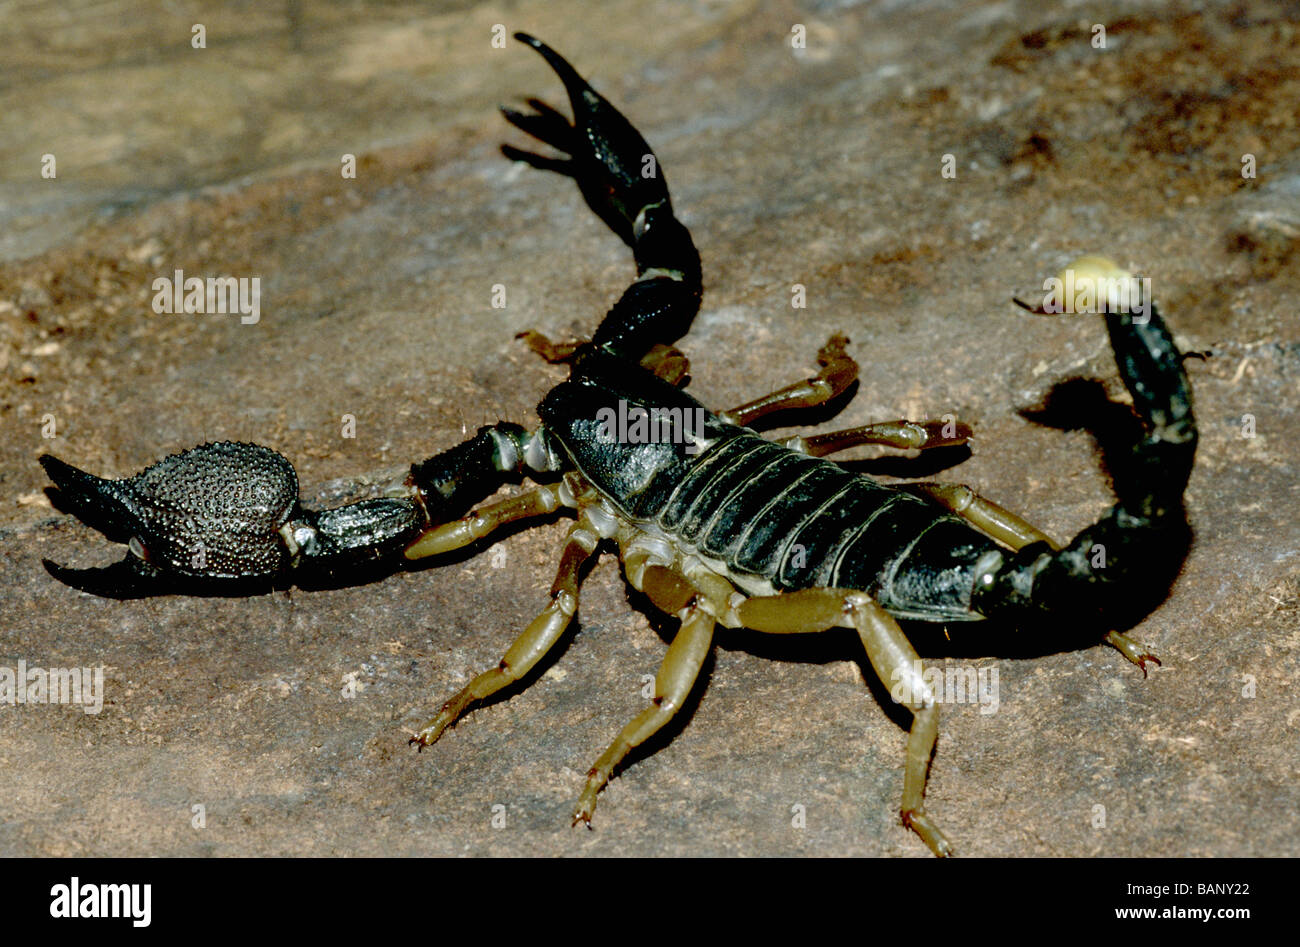 Black Scorpion 46